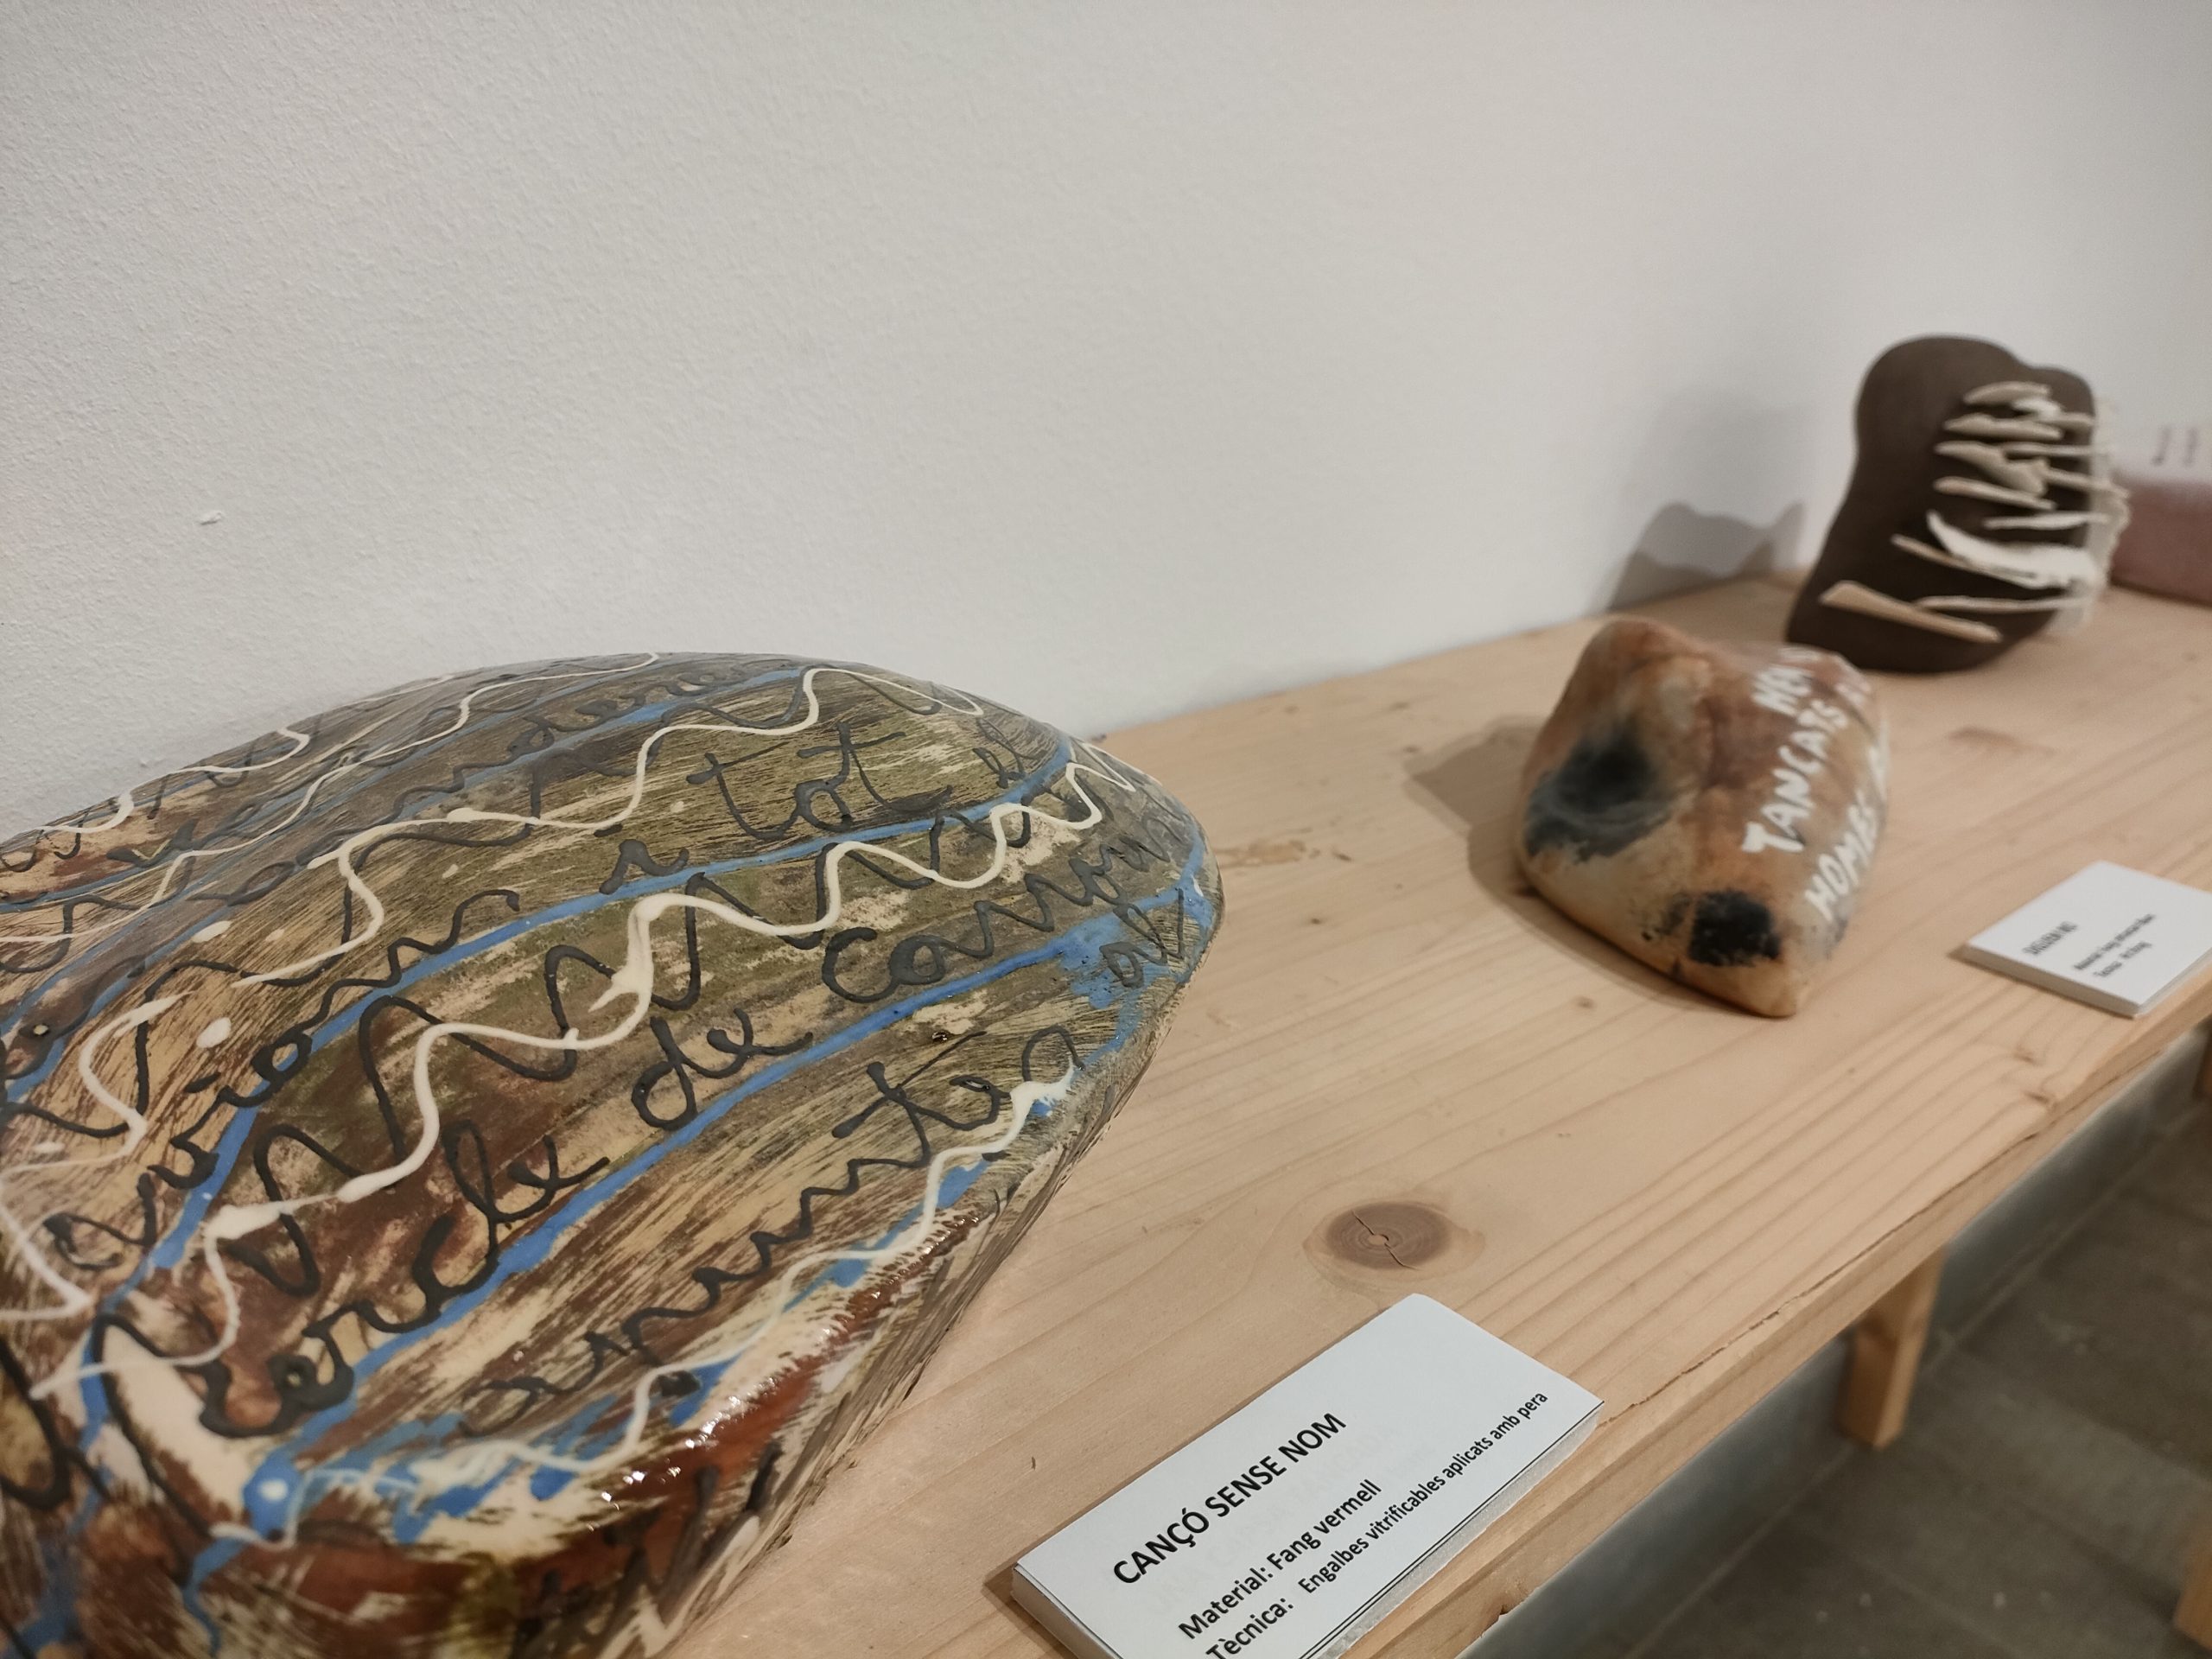 Exposició “Les pedres parlen” a càrrec de Paquita Clot